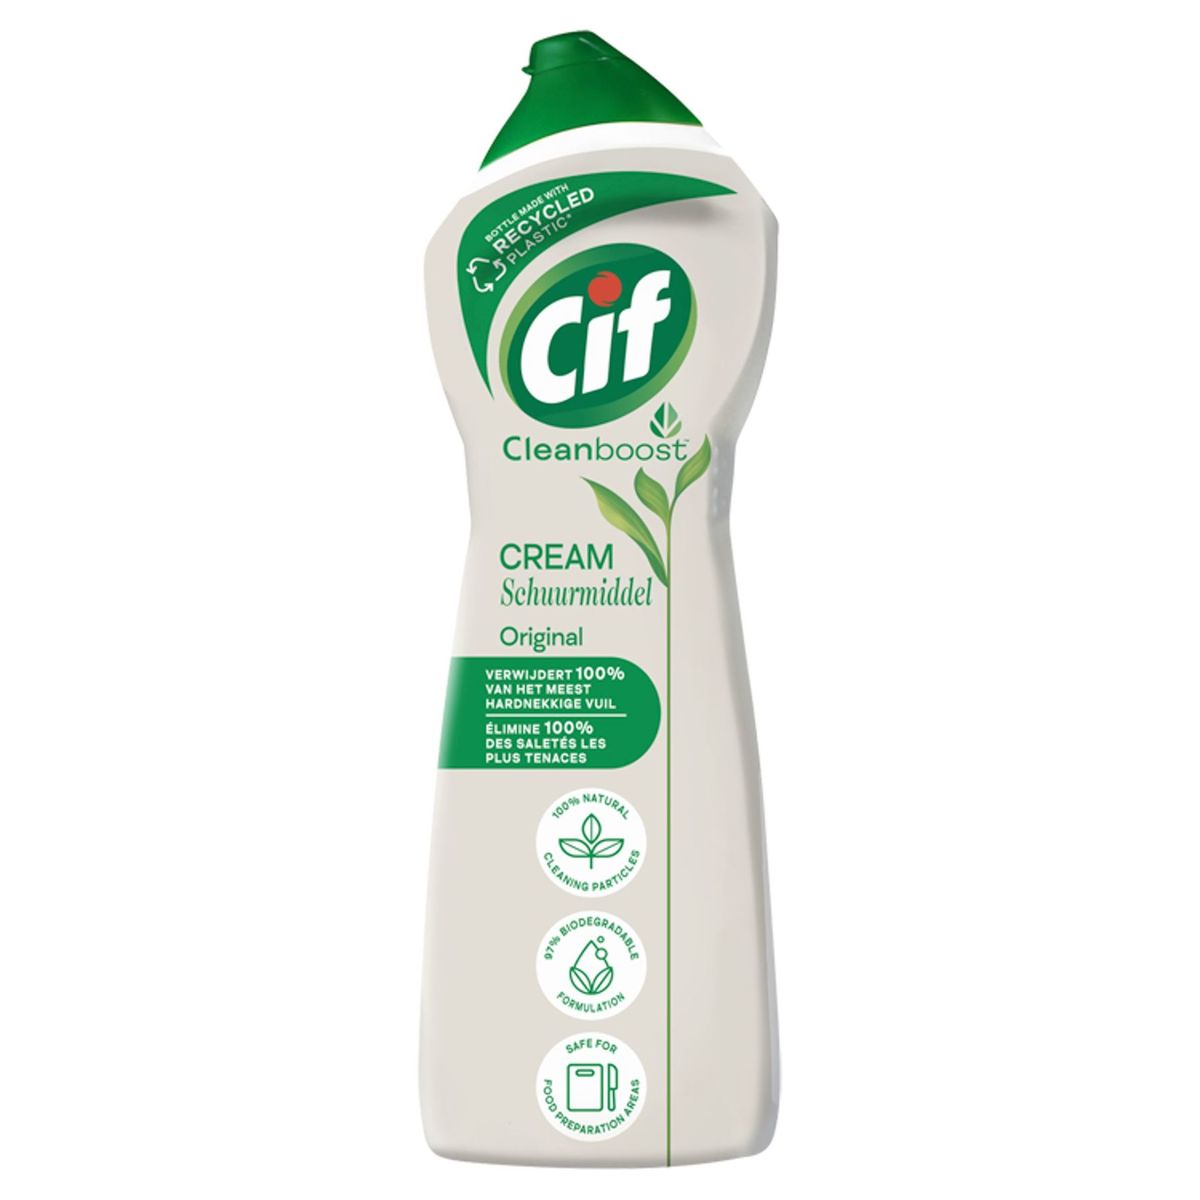 Cif Cleanboost Cream Original 750 ml